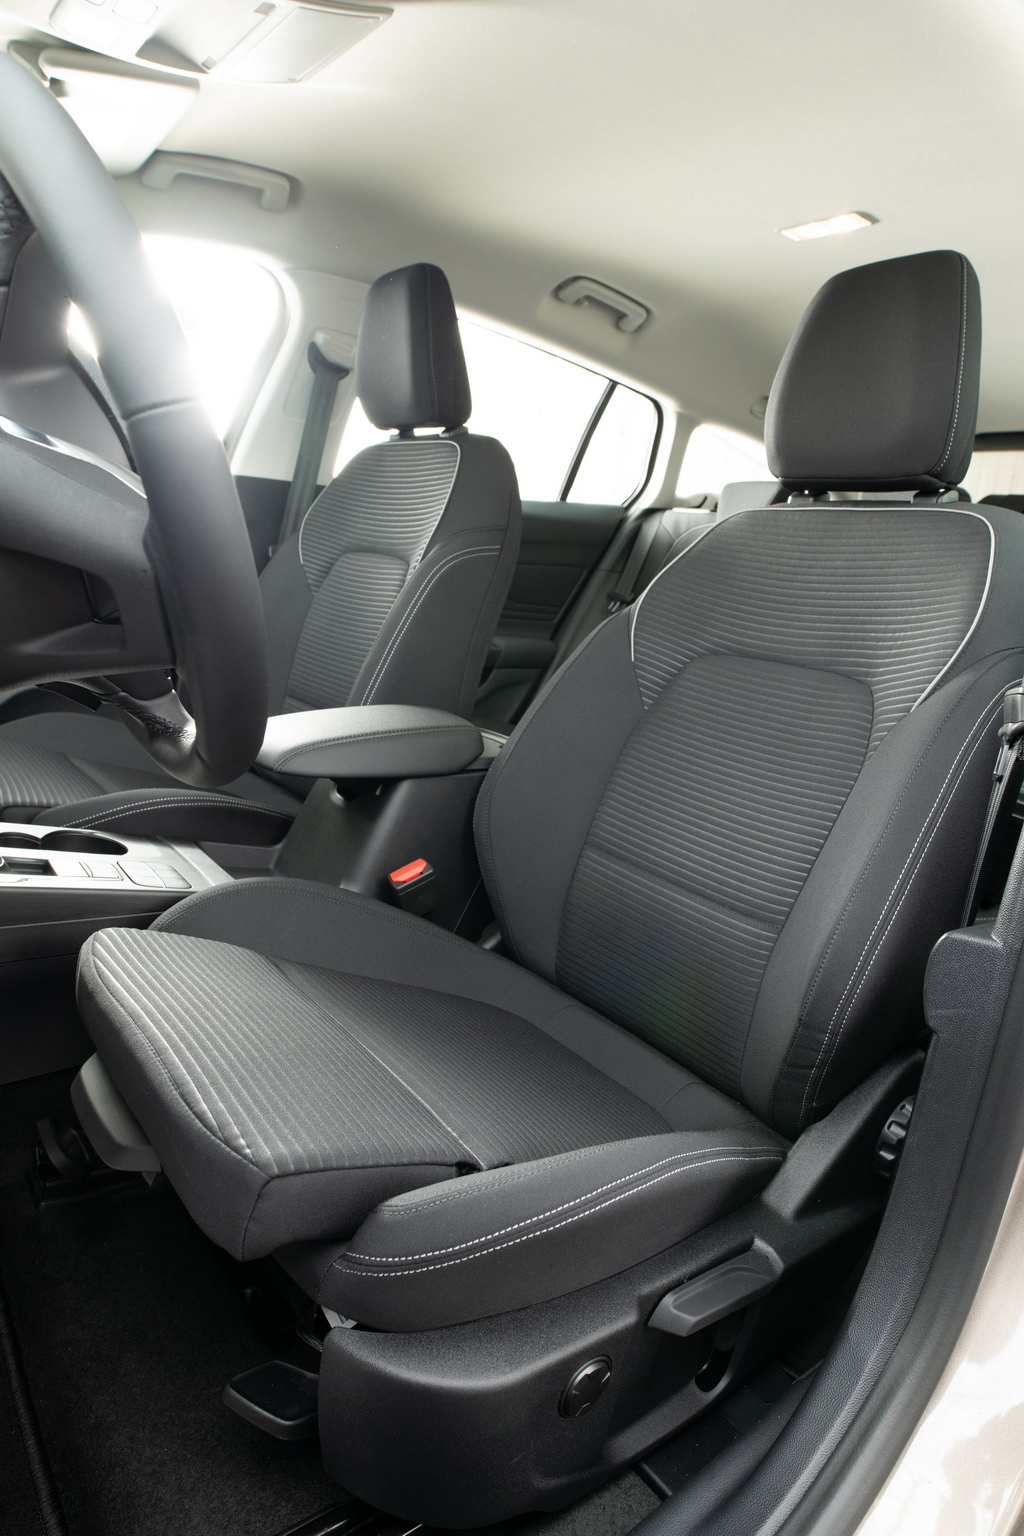 Σφραγίδα έγκρισης για τα καθίσματα του νέου Ford Focus 2